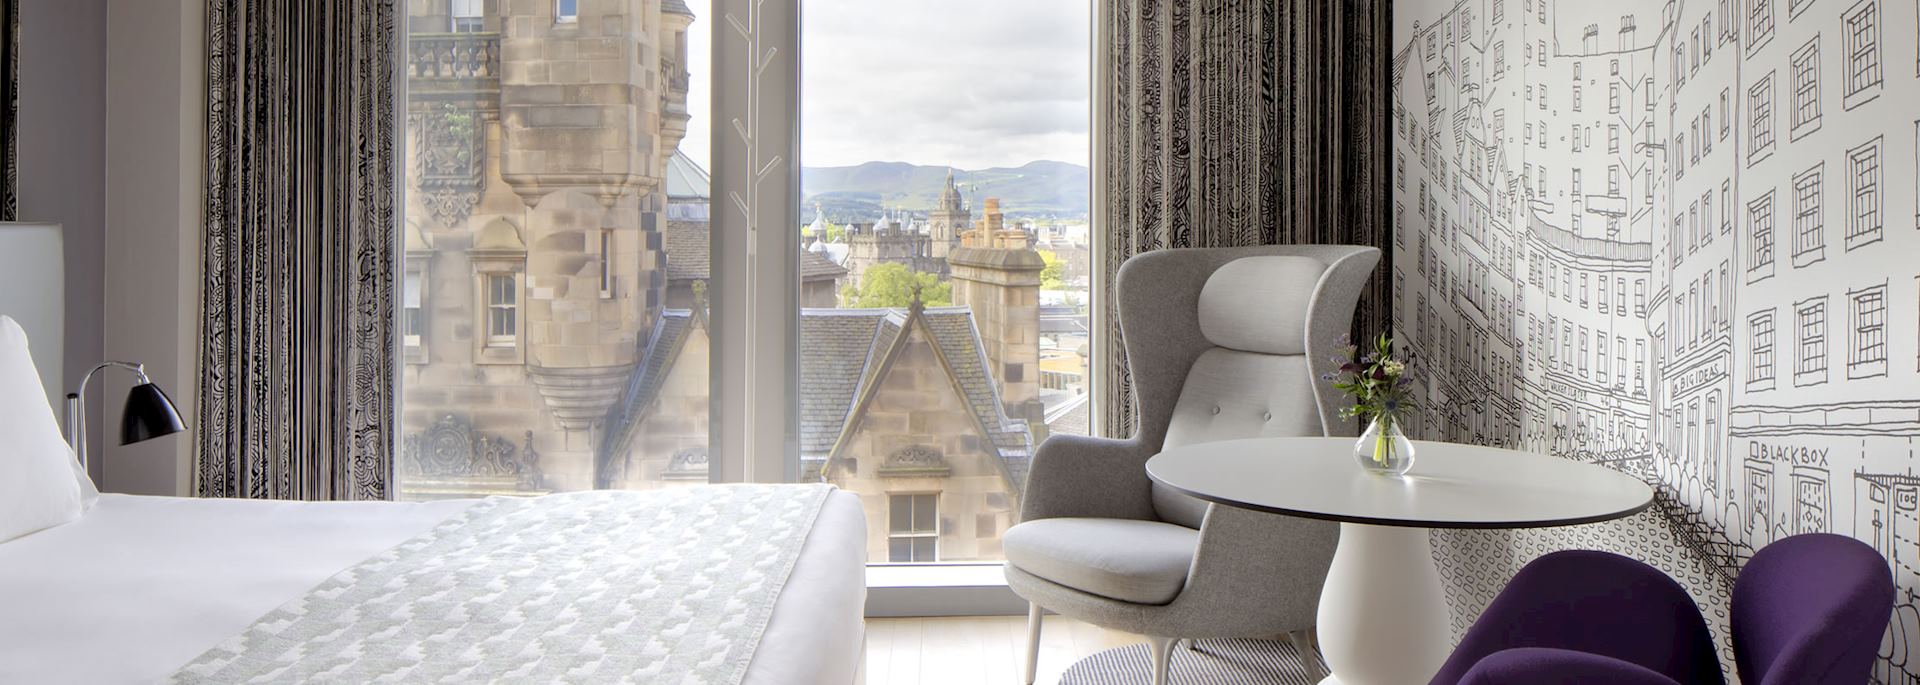 G&V Royal Mile Hotel, Edinburgh